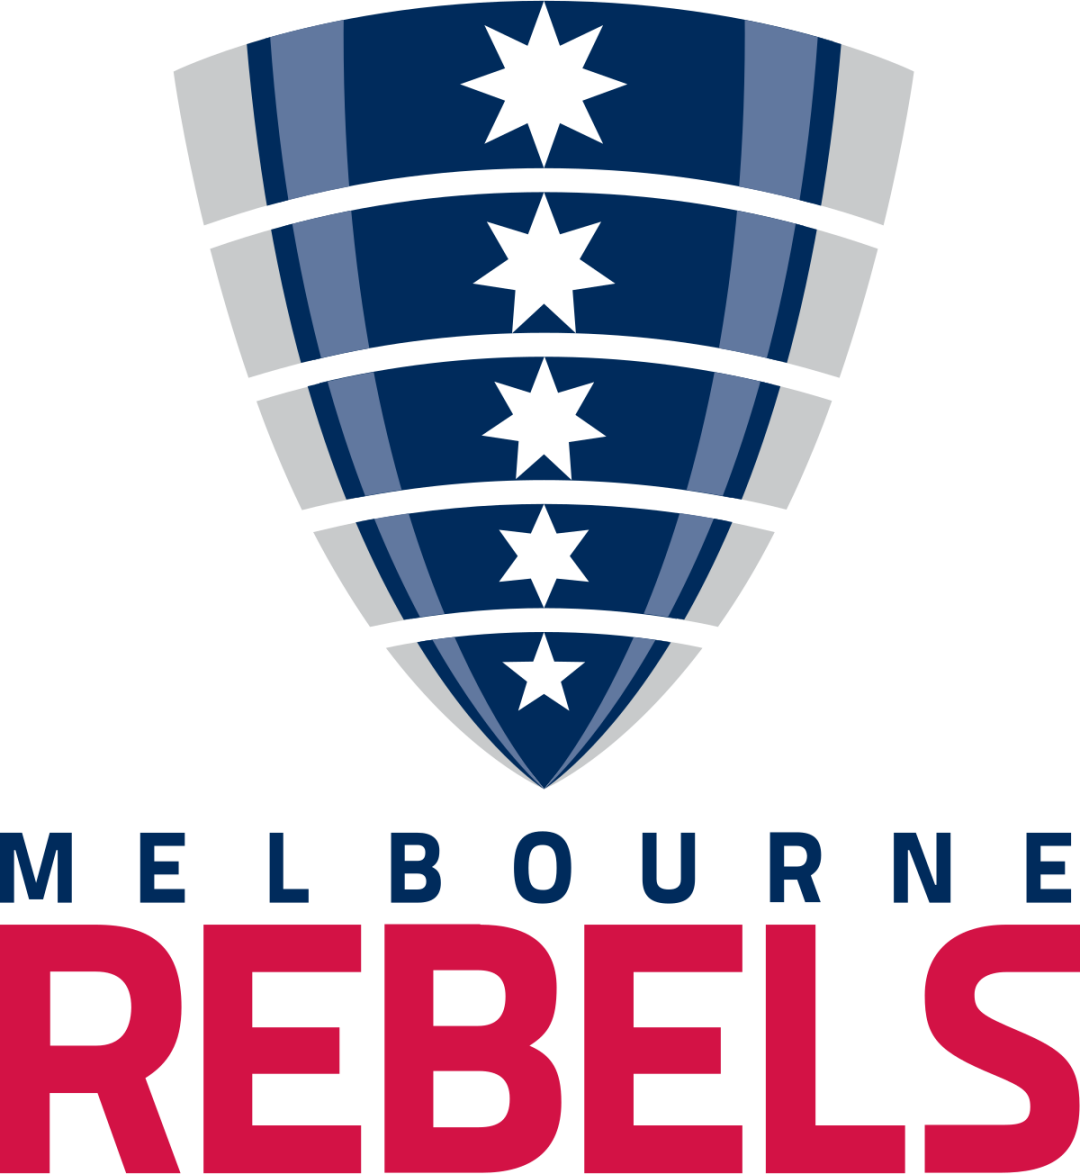 Melbourne Rebels